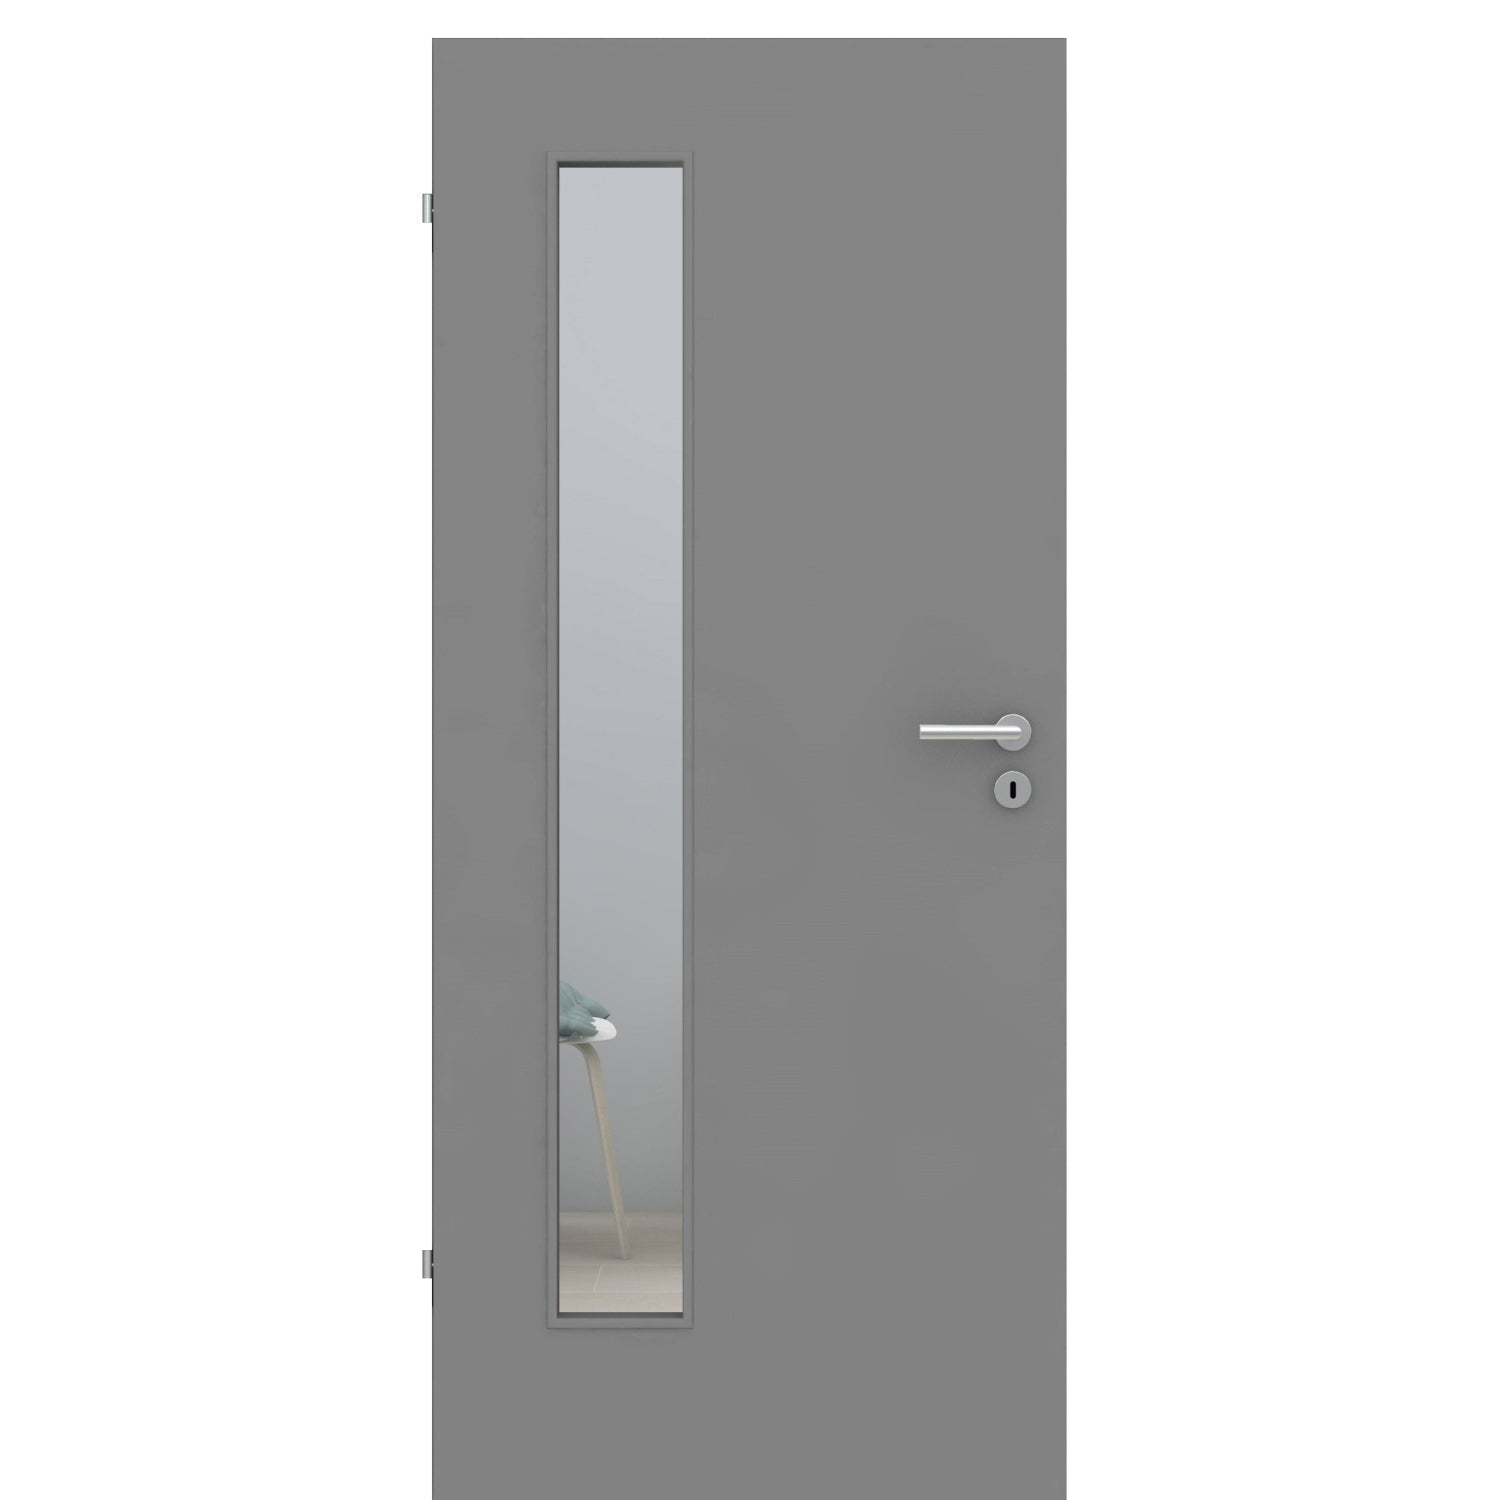 Zimmertür mit Lichtausschnitt grau glatt Designkante - Modell LAB